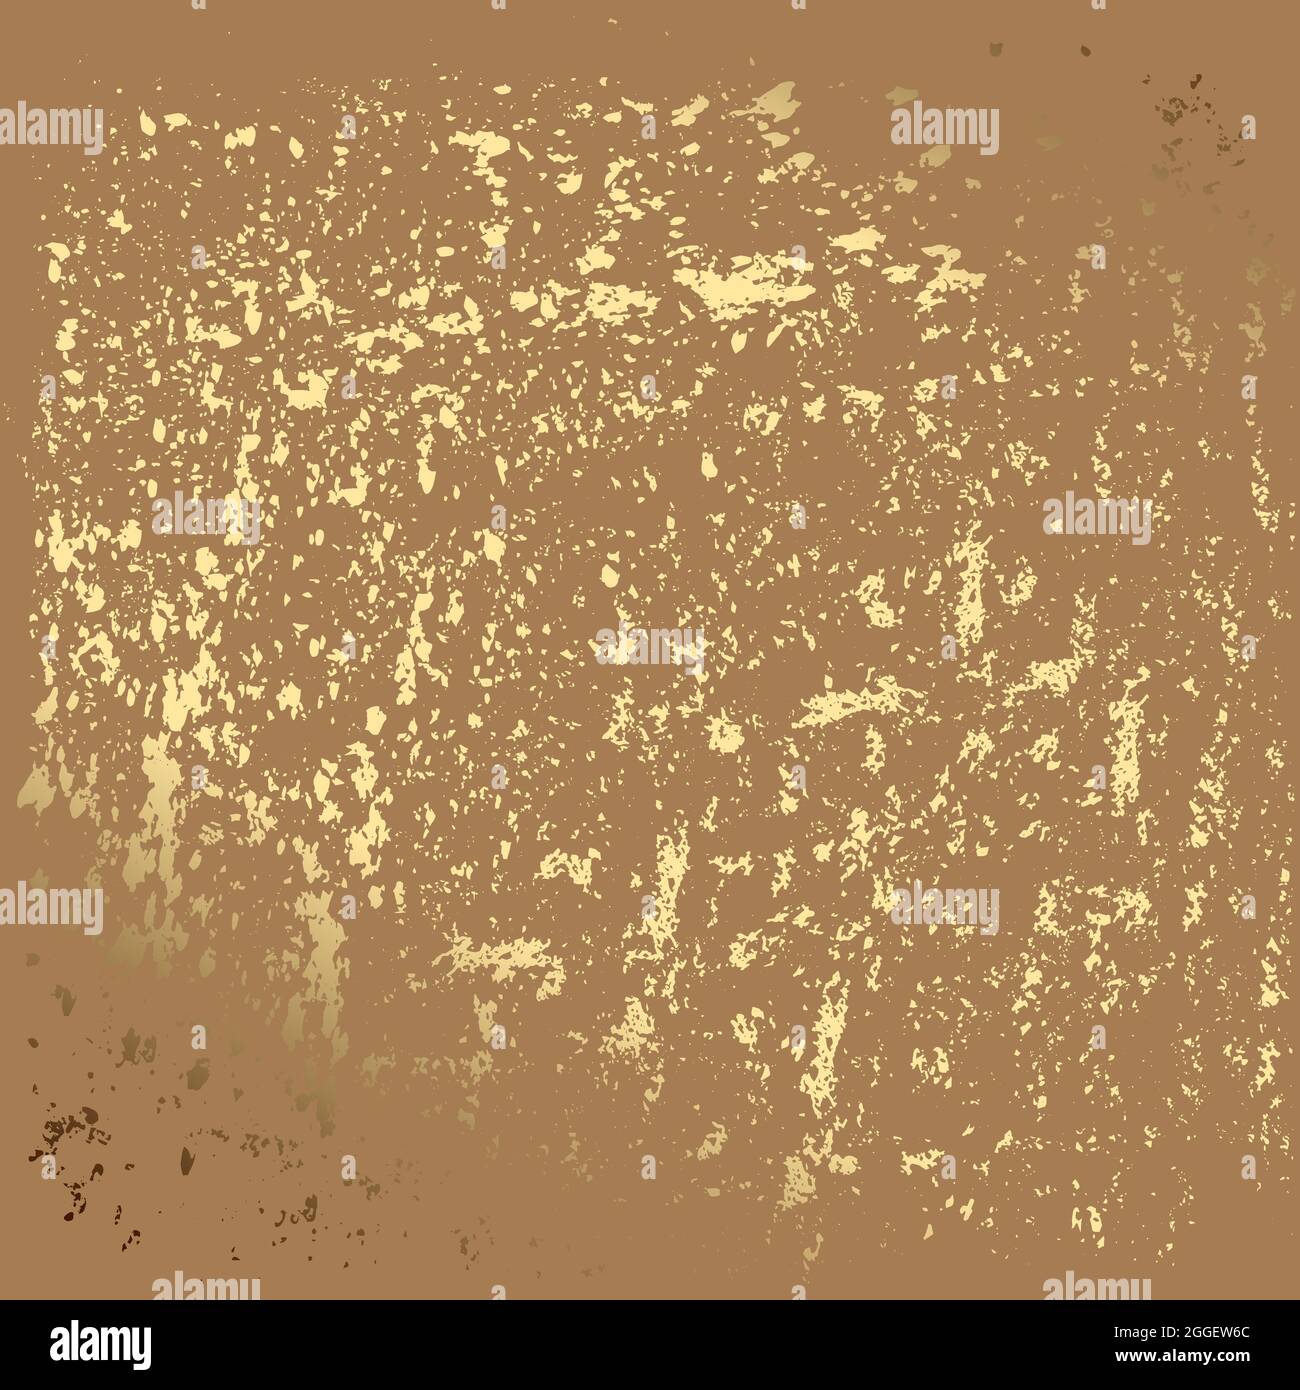 Marrone astratto grunge sfondo oro grunge texture per creare un effetto angosciato. Patina graffio, crepa elementi dorati. Illustrazione astratta vintage Illustrazione Vettoriale